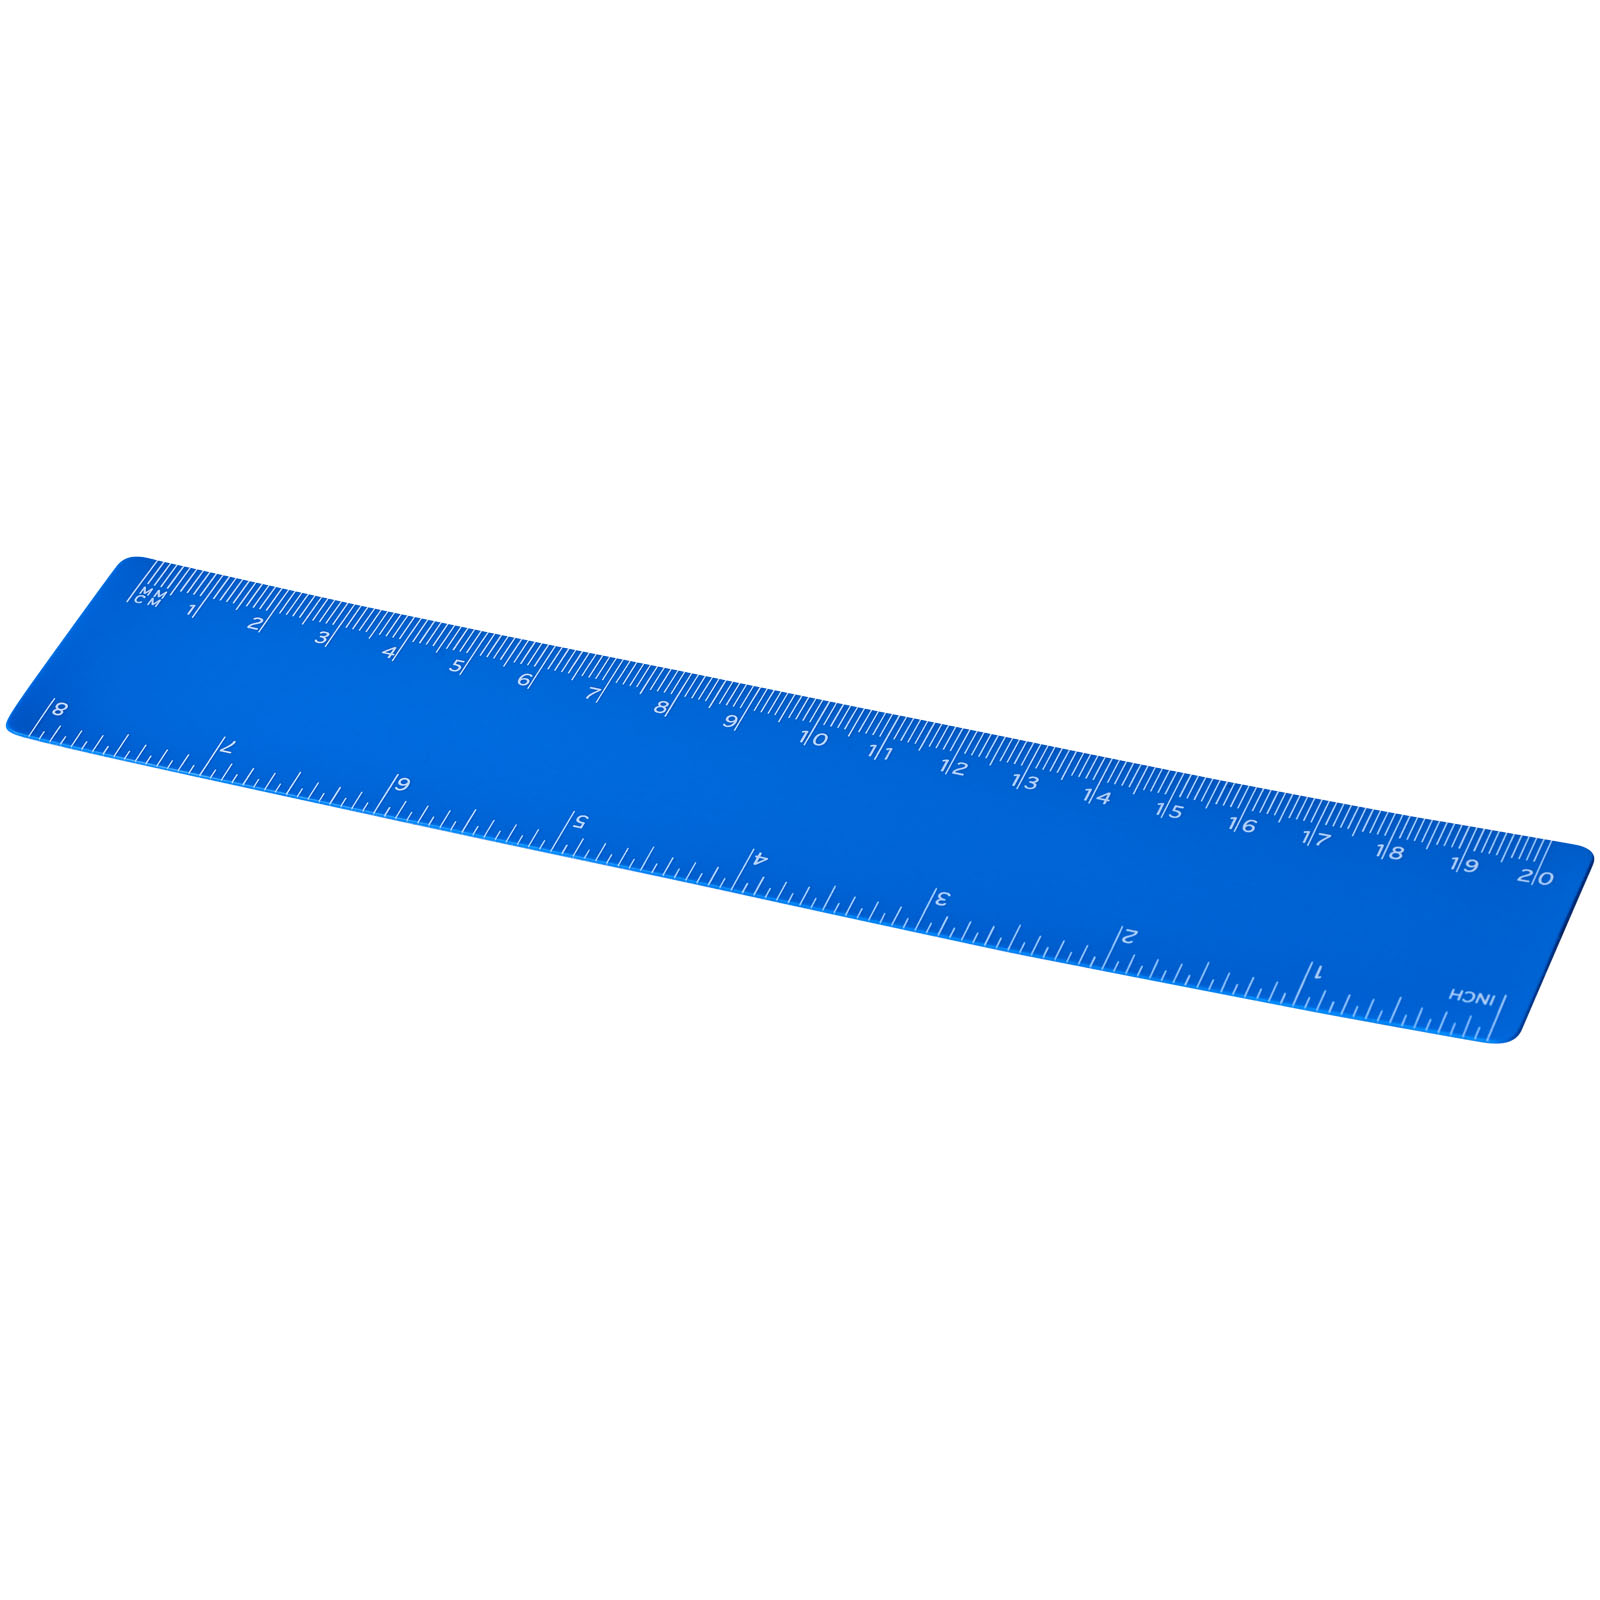 Flexible Lightweight Plastic Ruler - Gnosall